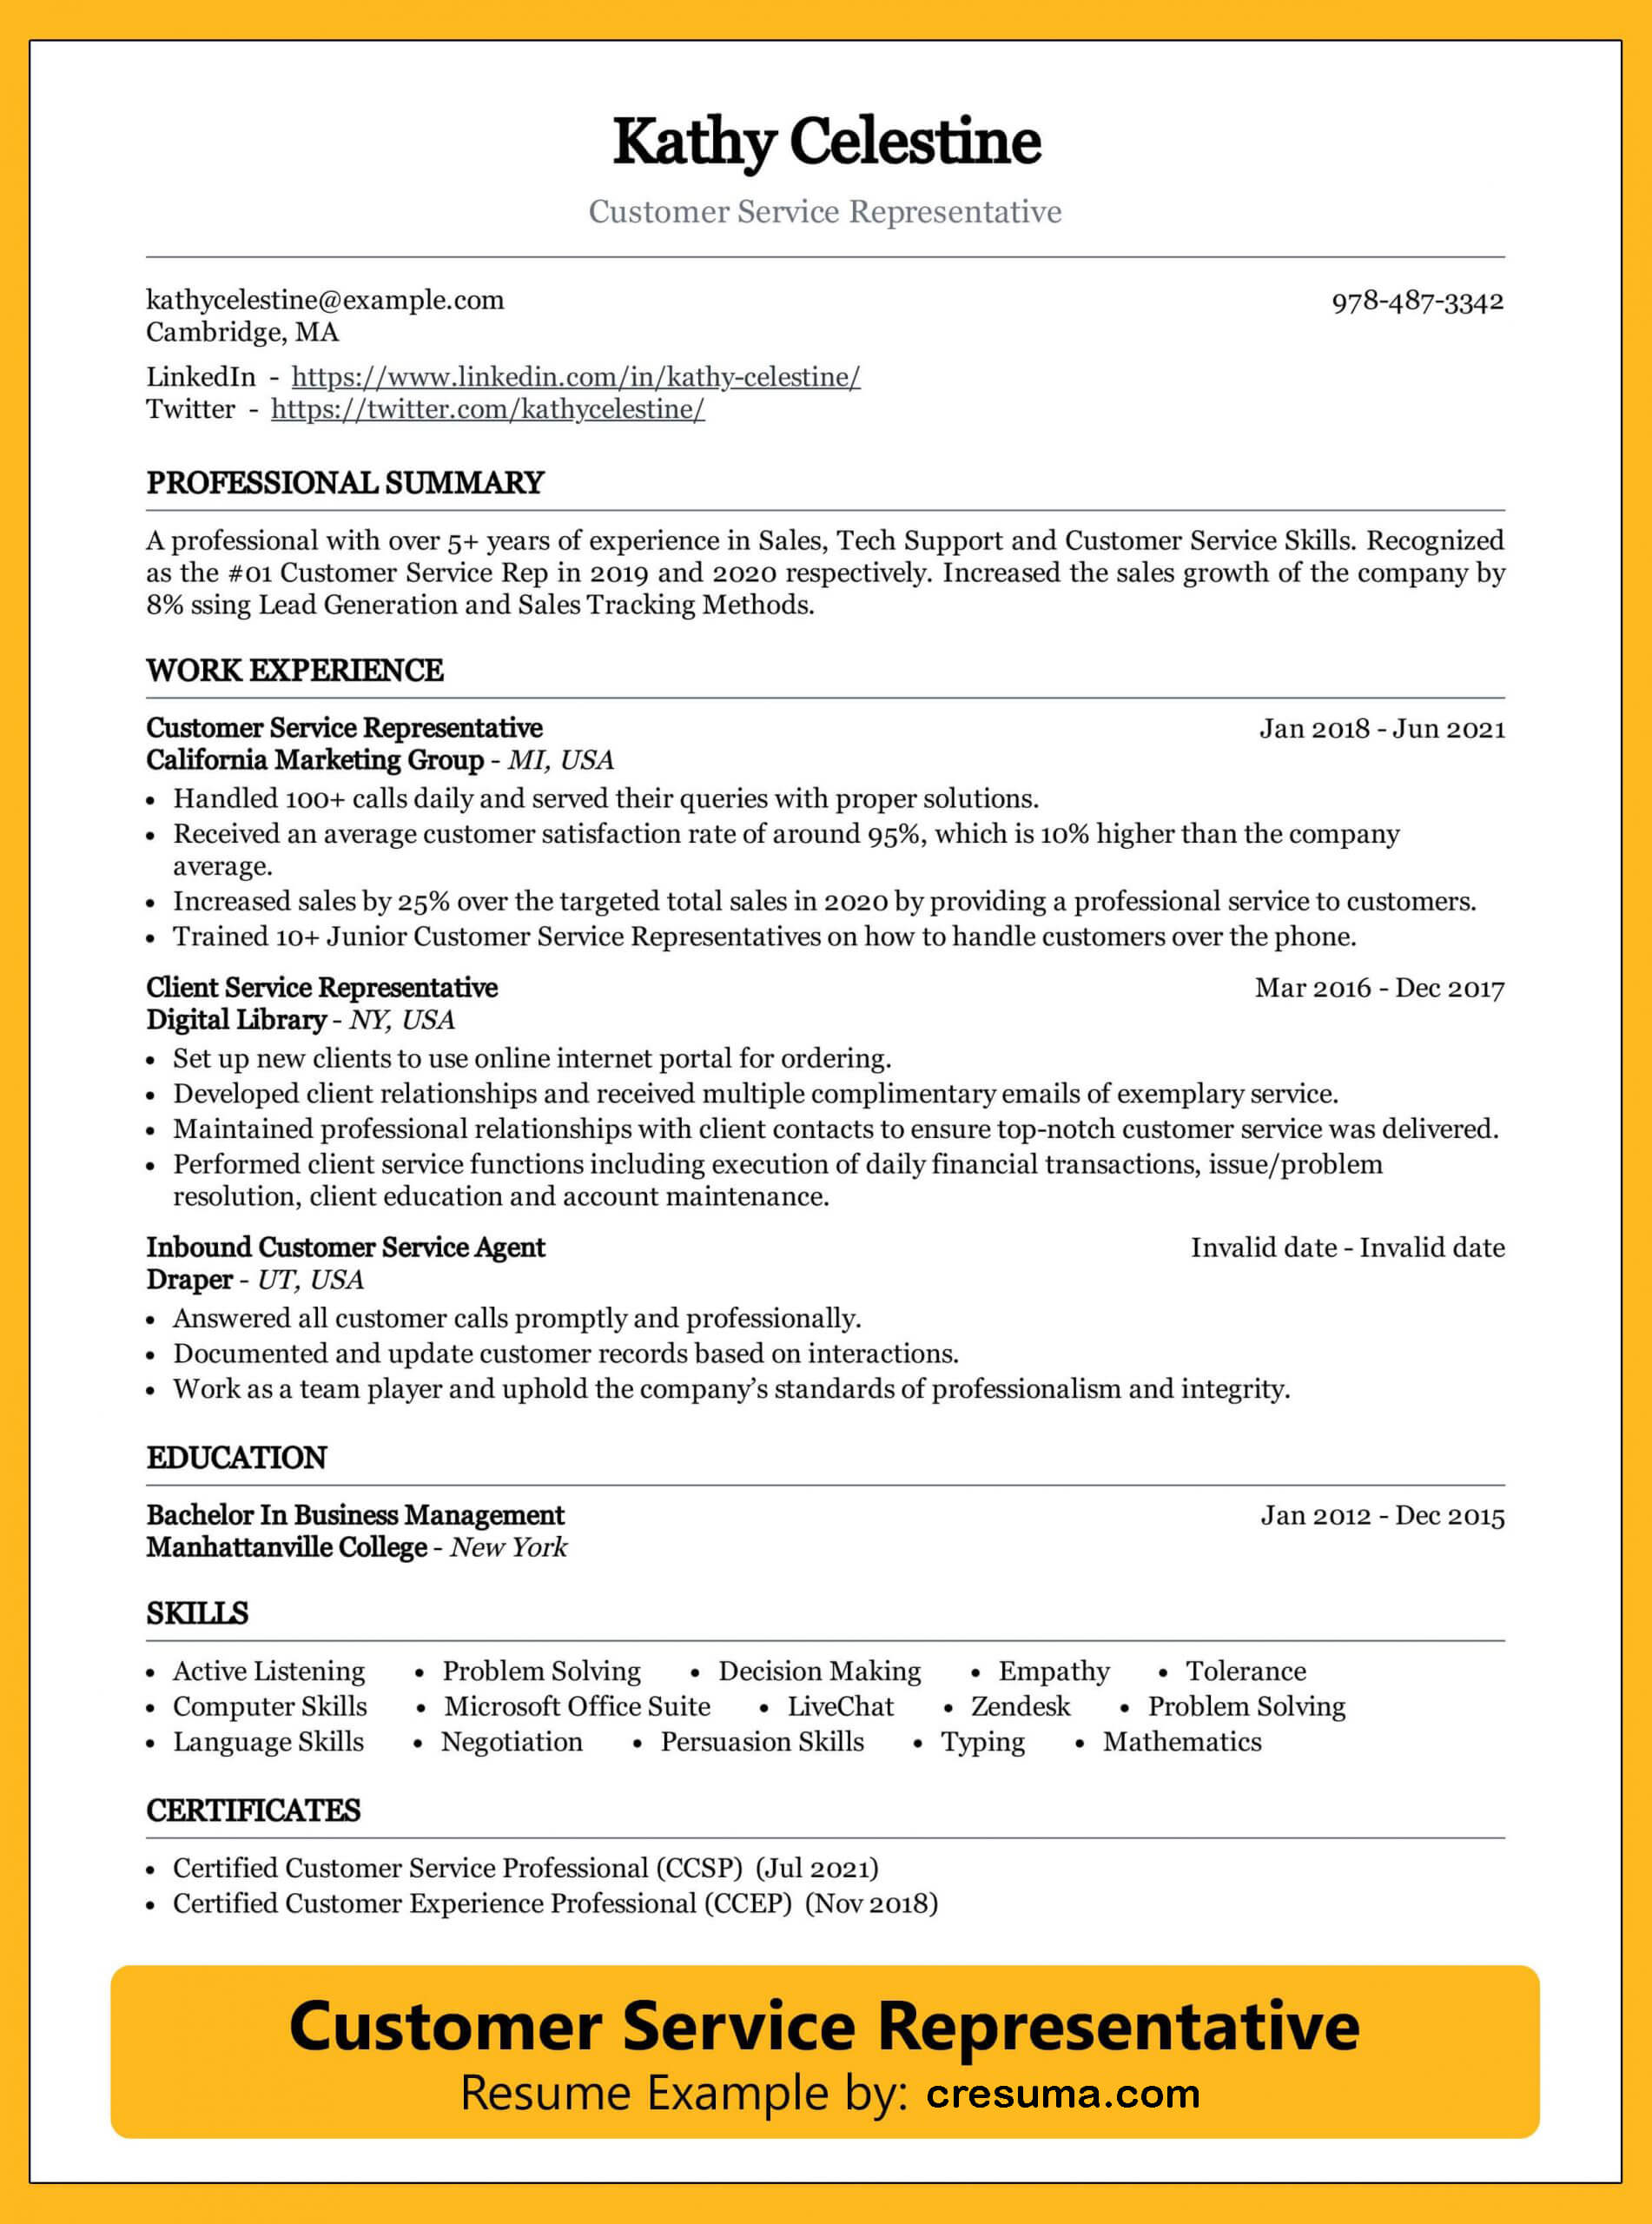 resume sample for customer service representative